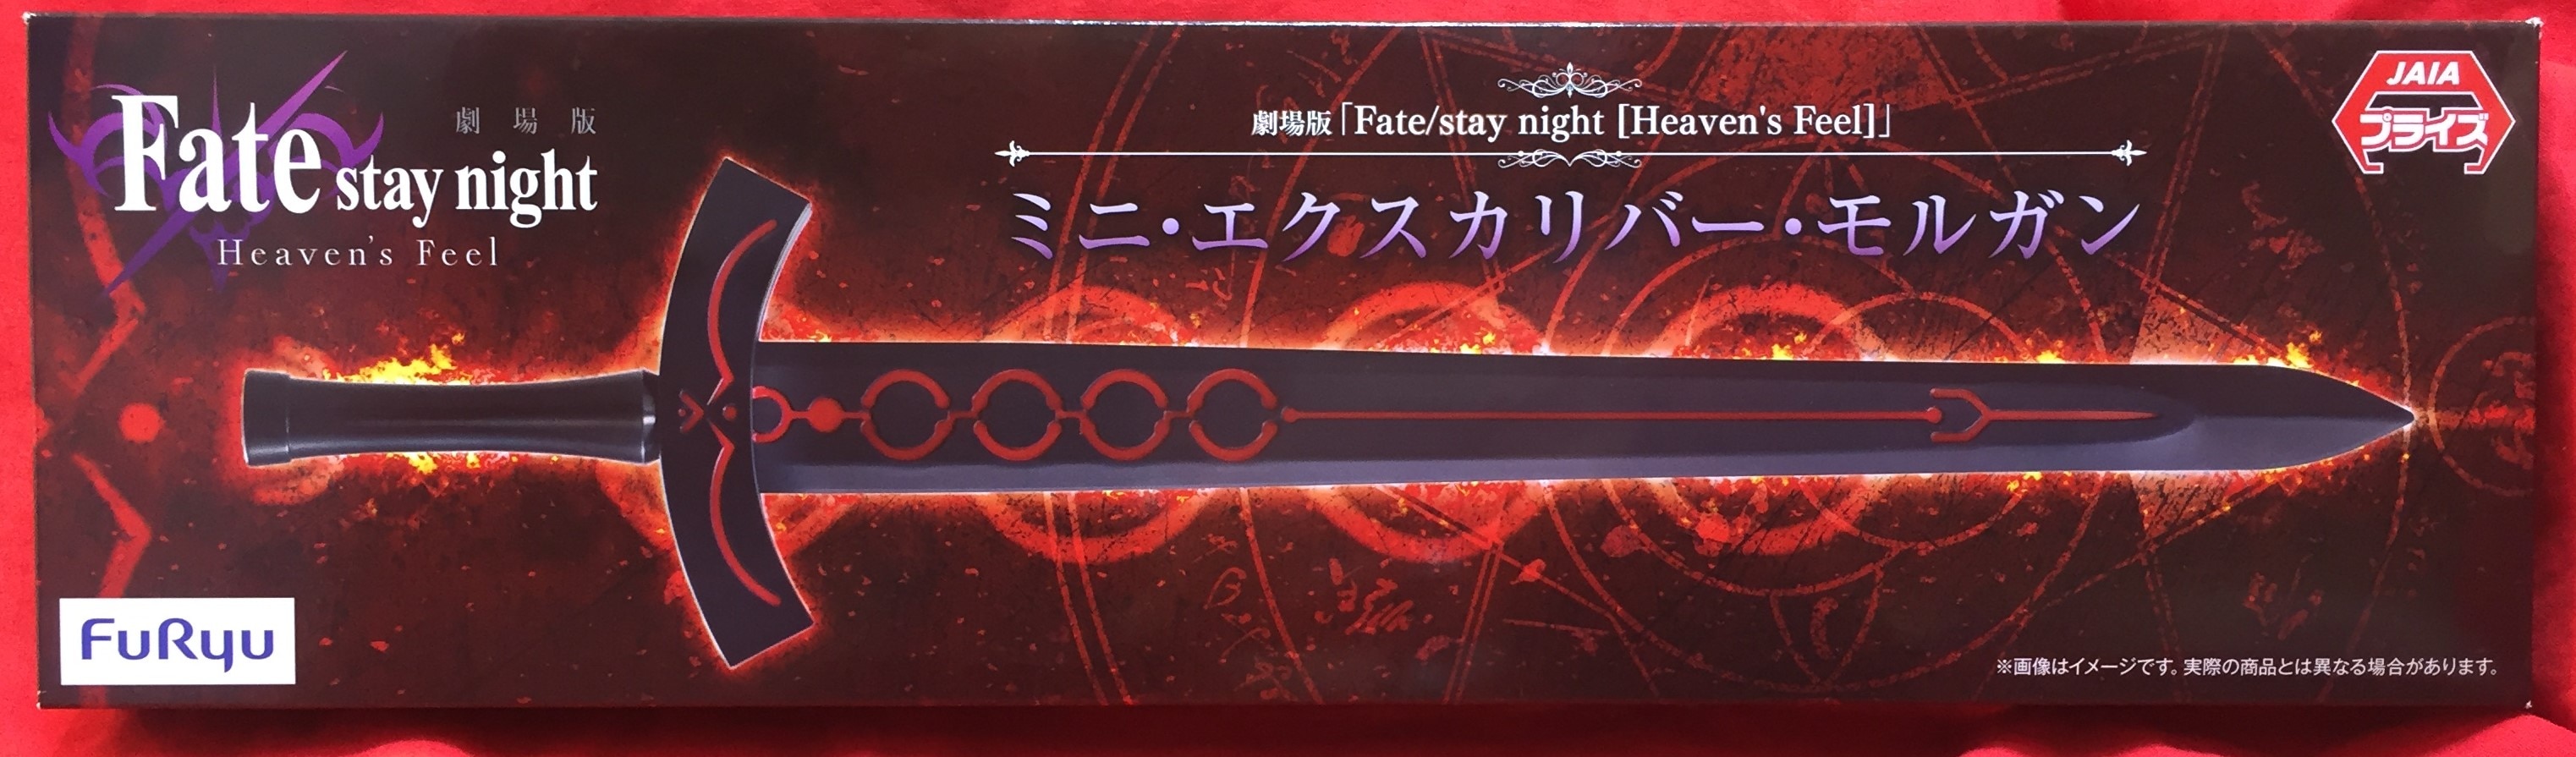 フリュー/Fate/stay night Heaven's Feel【ミニ・エクスカリバー ミニ・エクスカリバー モルガン/mini Excalibur  Morugan】 まんだらけ Mandarake